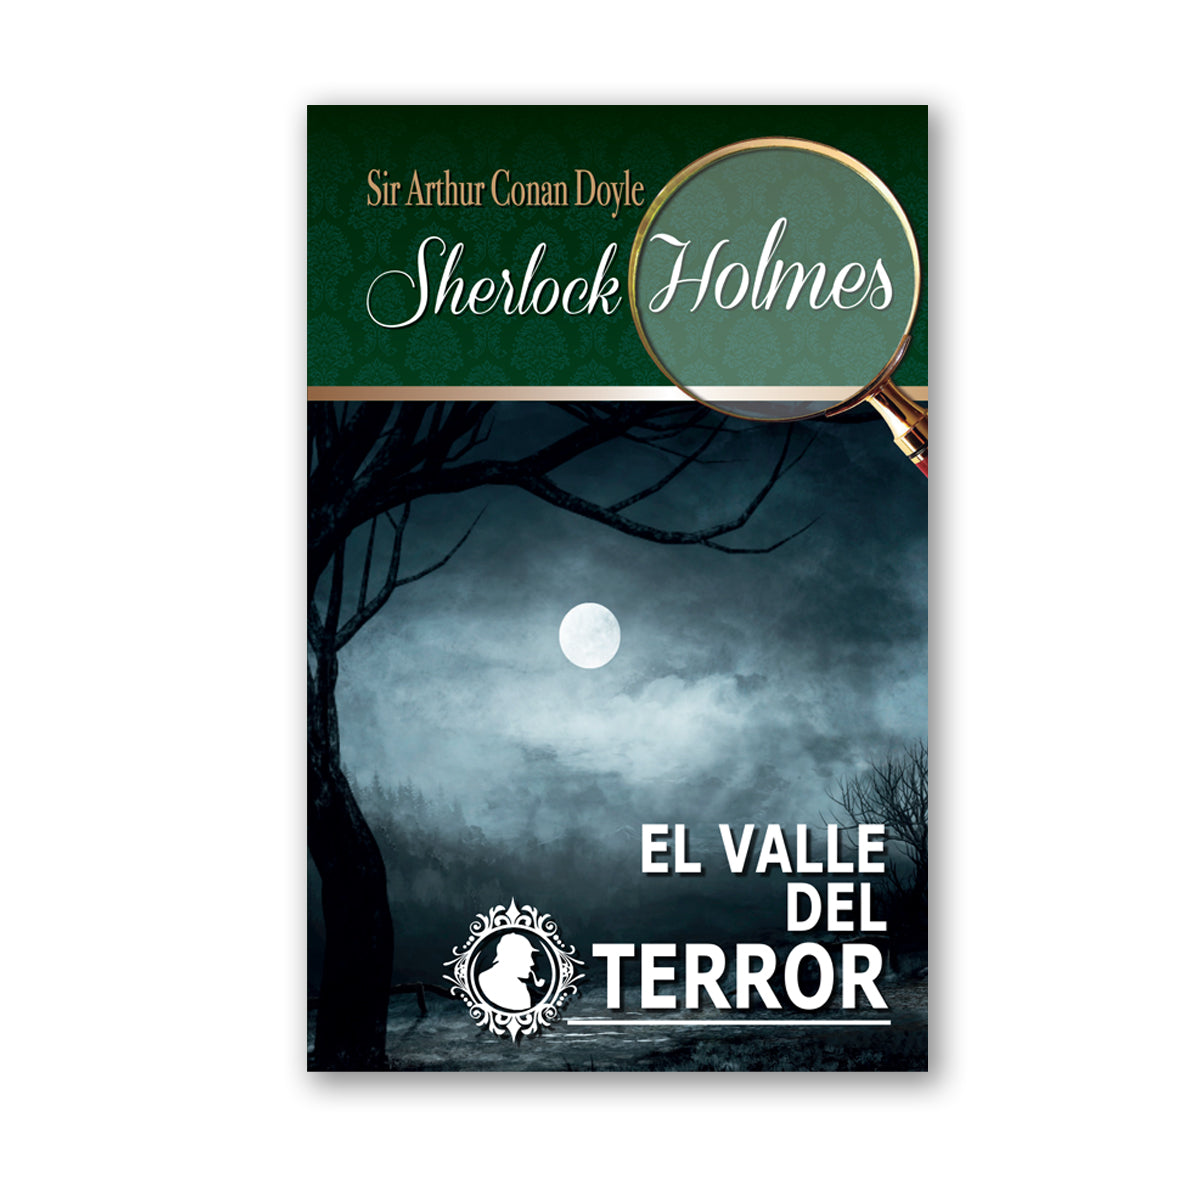 Colección Sherlock Holmes "El Valle del Terror"